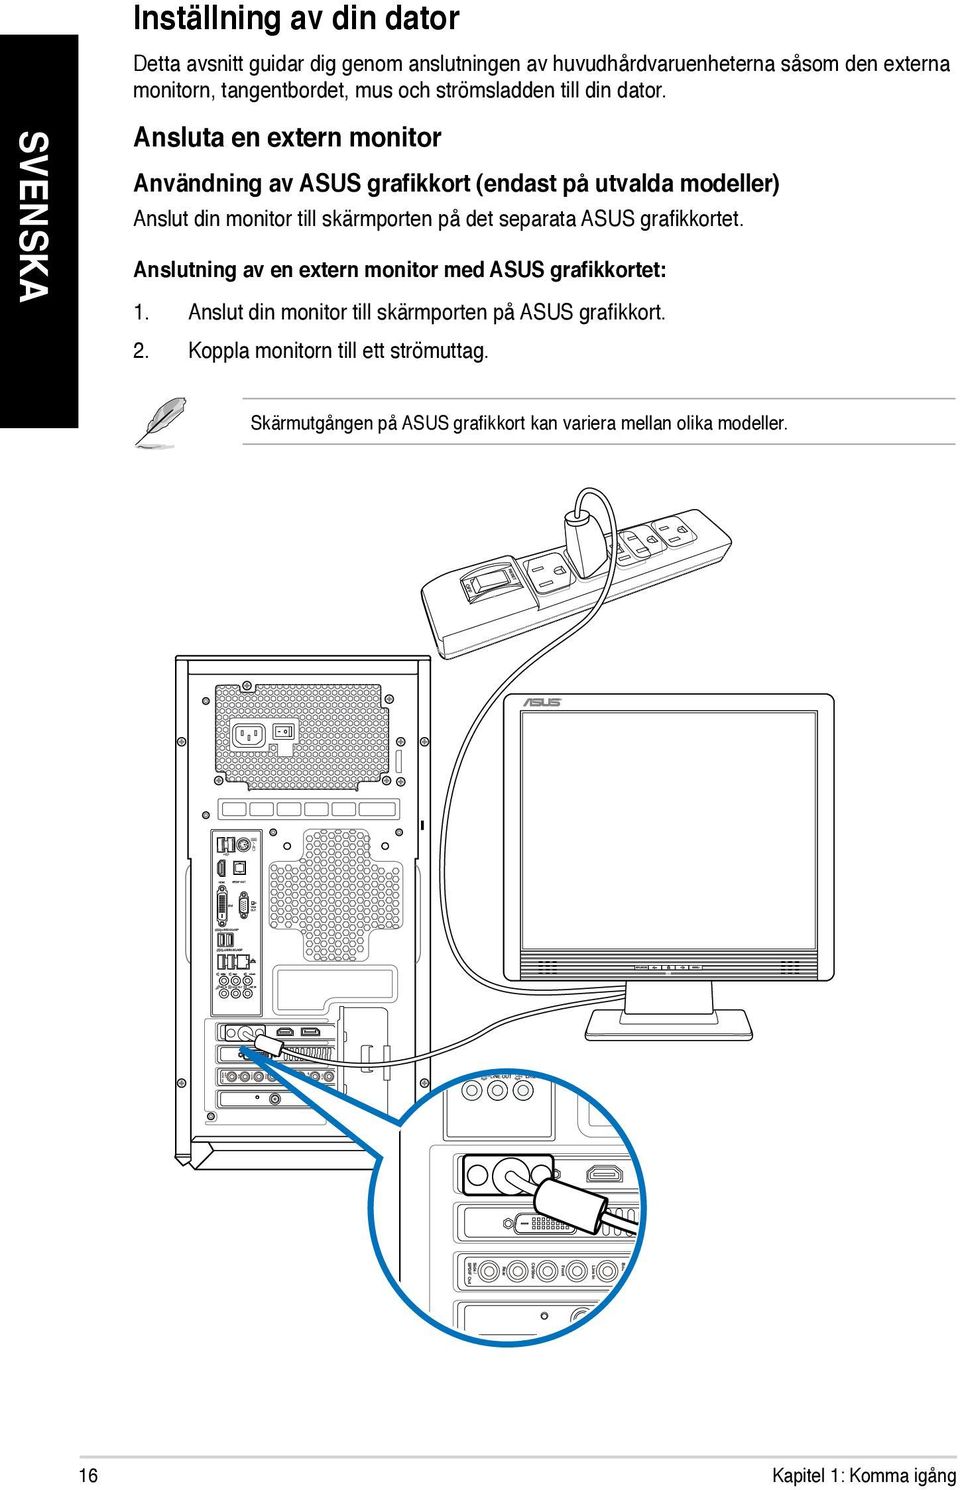 Anslutning av en extern monitor med ASUS grafikkortet: 1. Anslut din monitor till skärmporten på ASUS grafikkort. 2. Koppla monitorn till ett strömuttag.